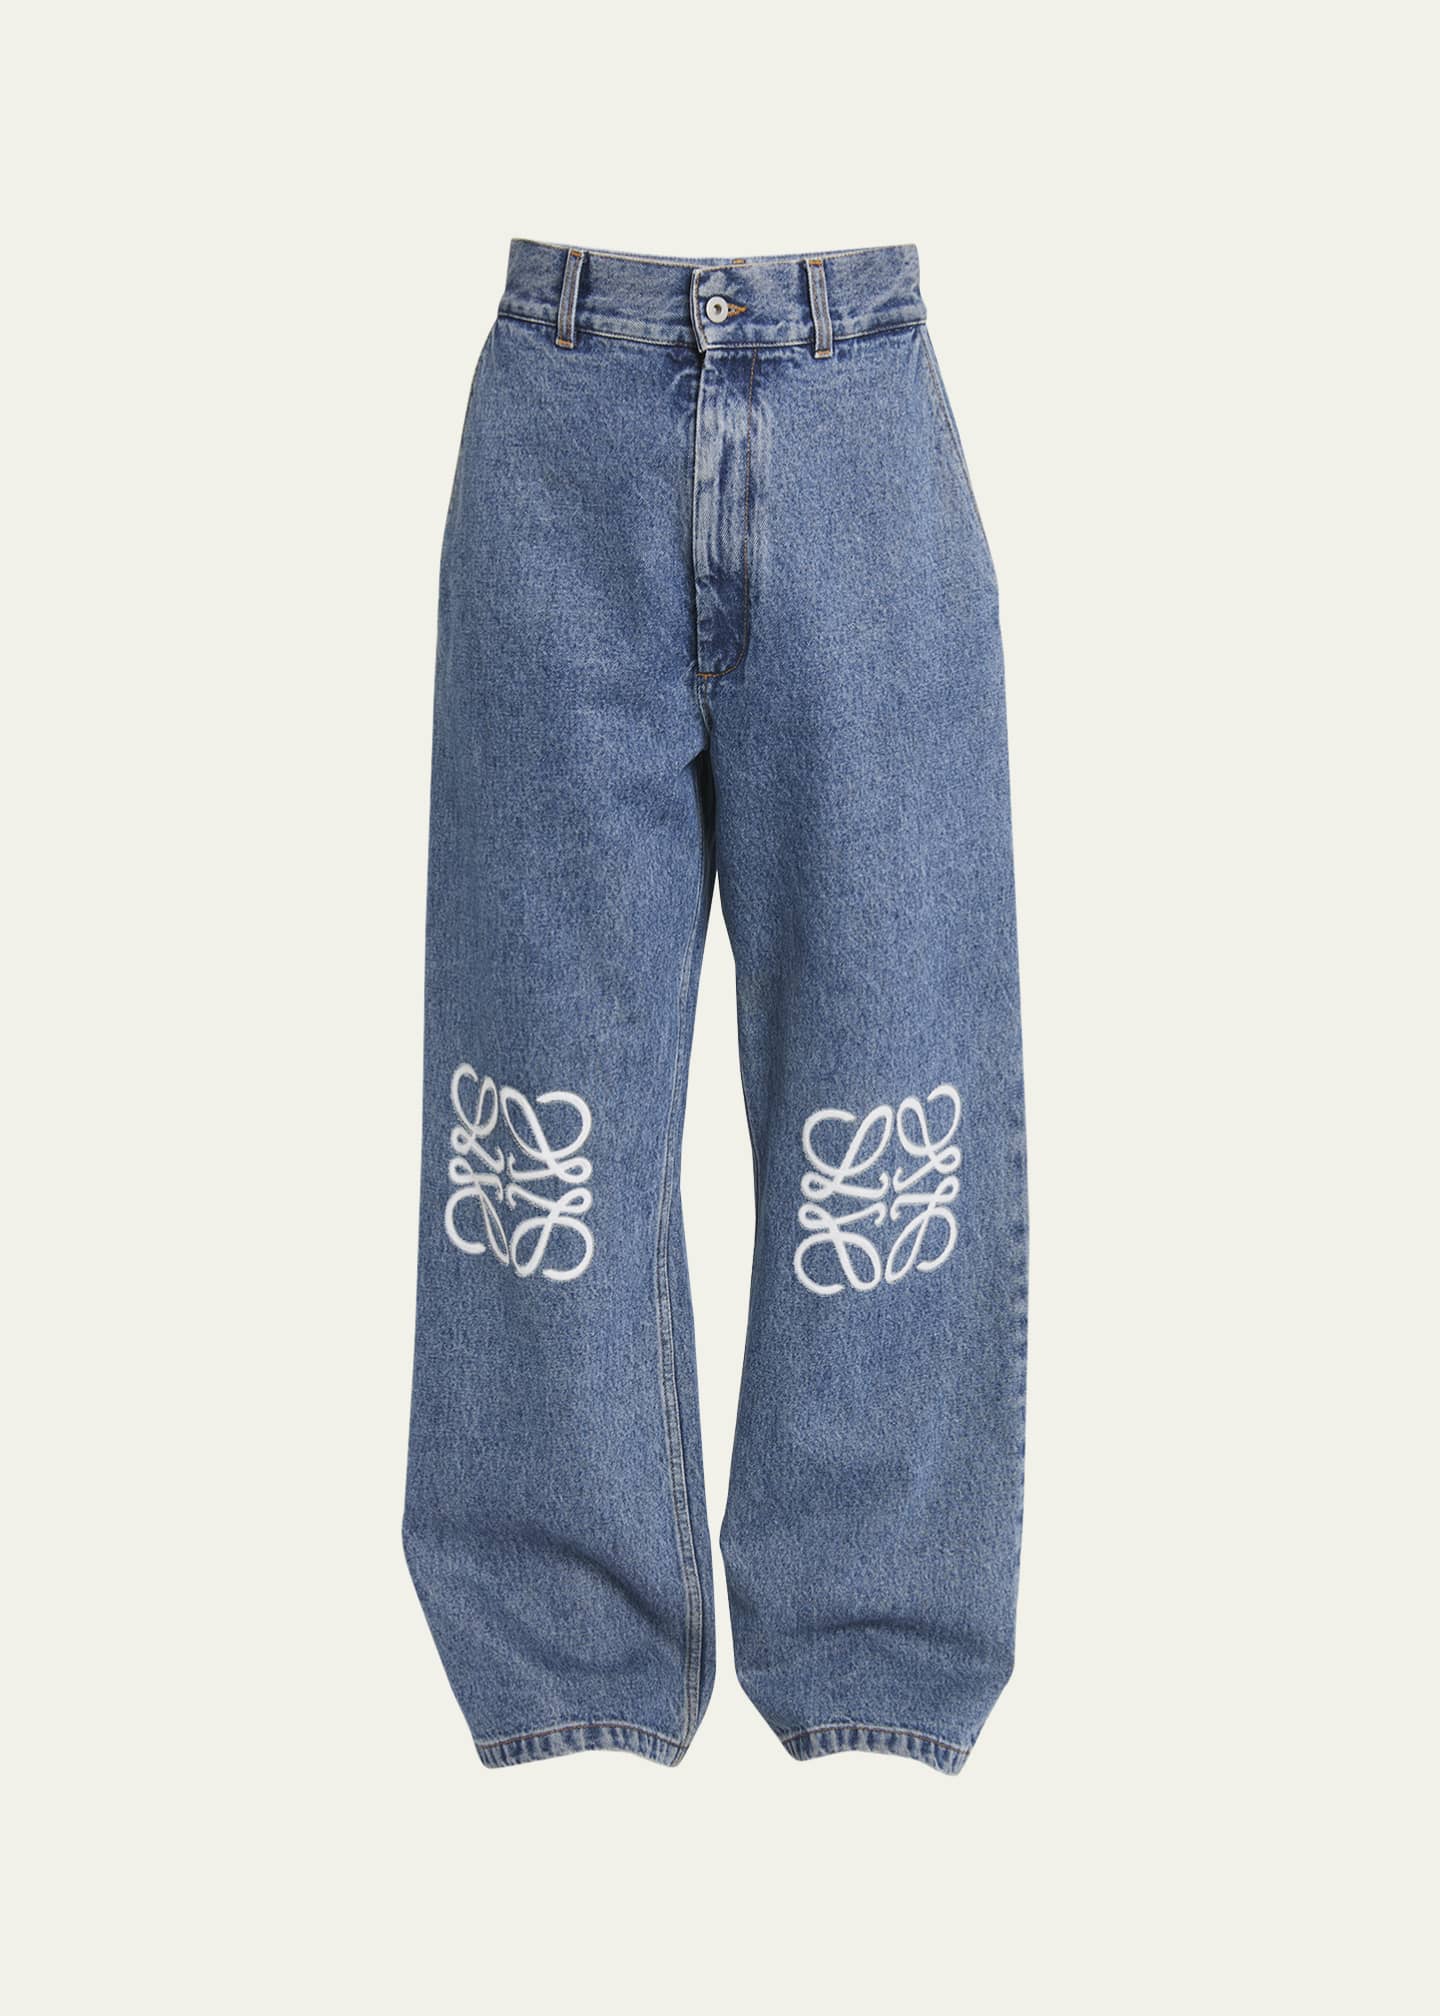 Long baggy jeans in blue bay denim, Saint Laurent